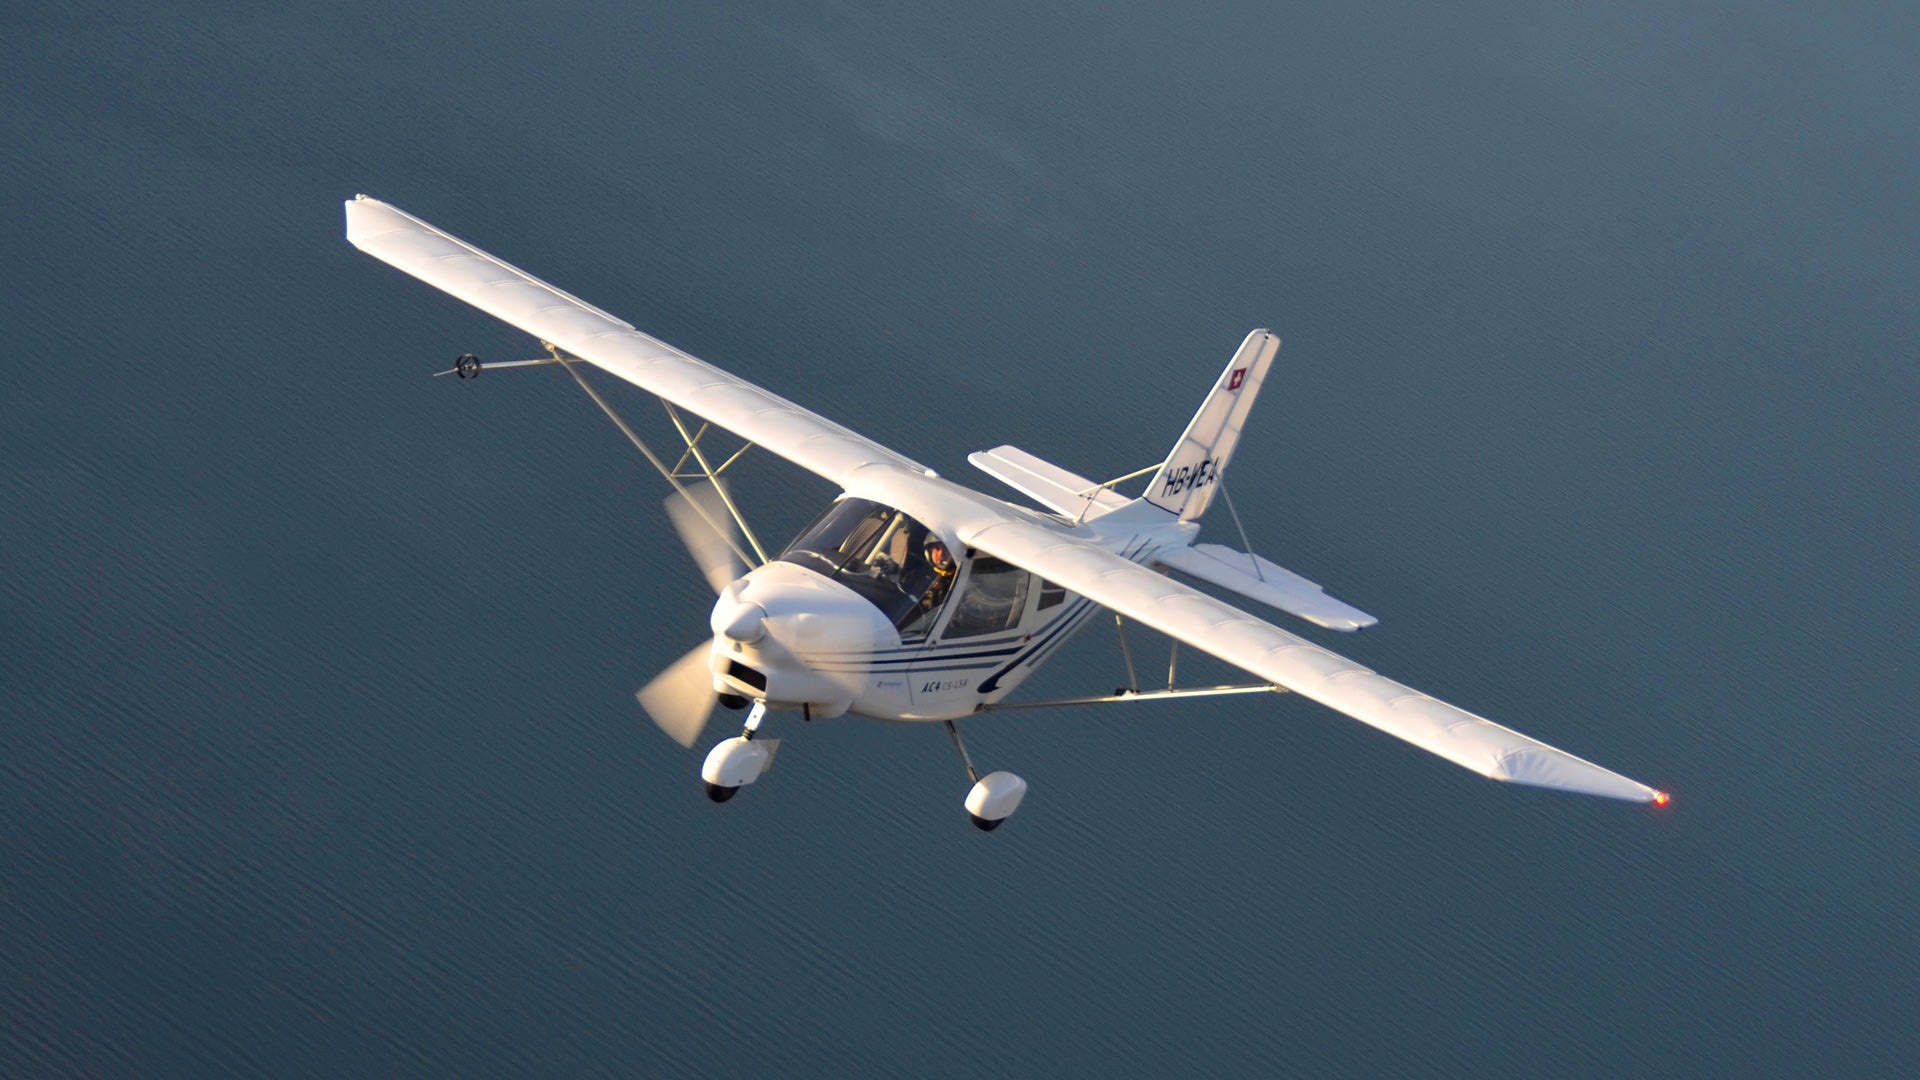 Reims-Cessna, Lightwing AC4, Ultralight aircraft, Stans Aerodrome, 1920x1080 Full HD Desktop